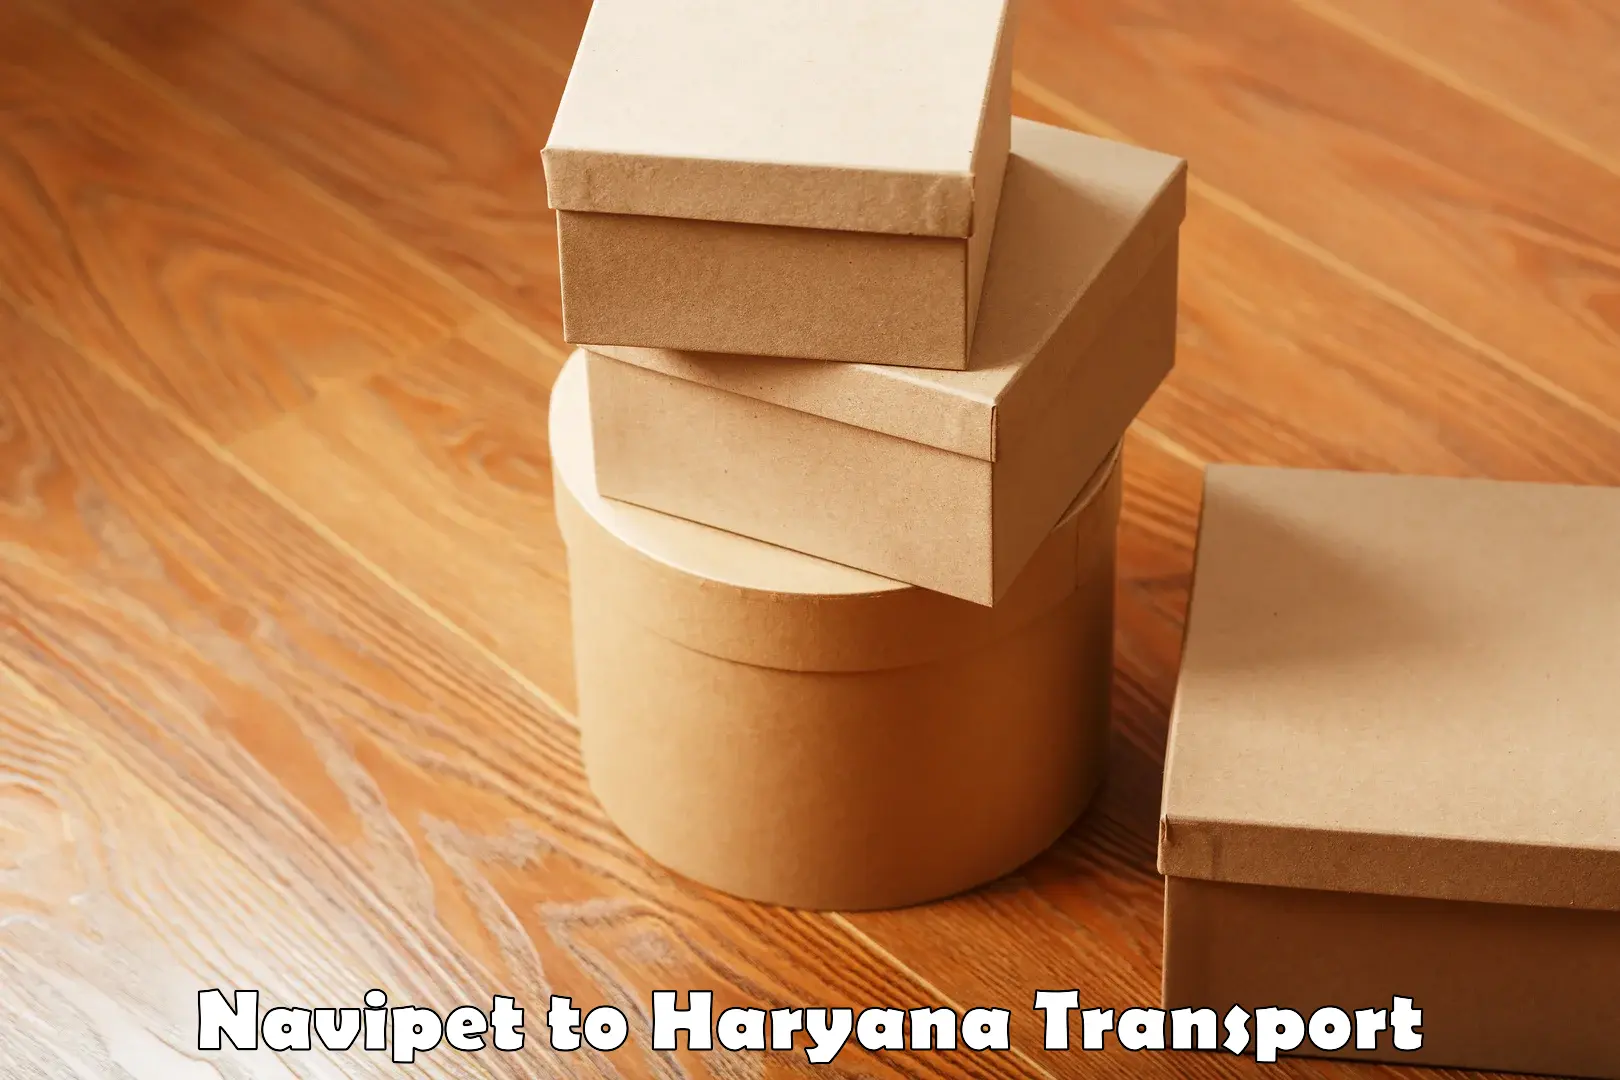 Furniture transport service Navipet to NIT Kurukshetra